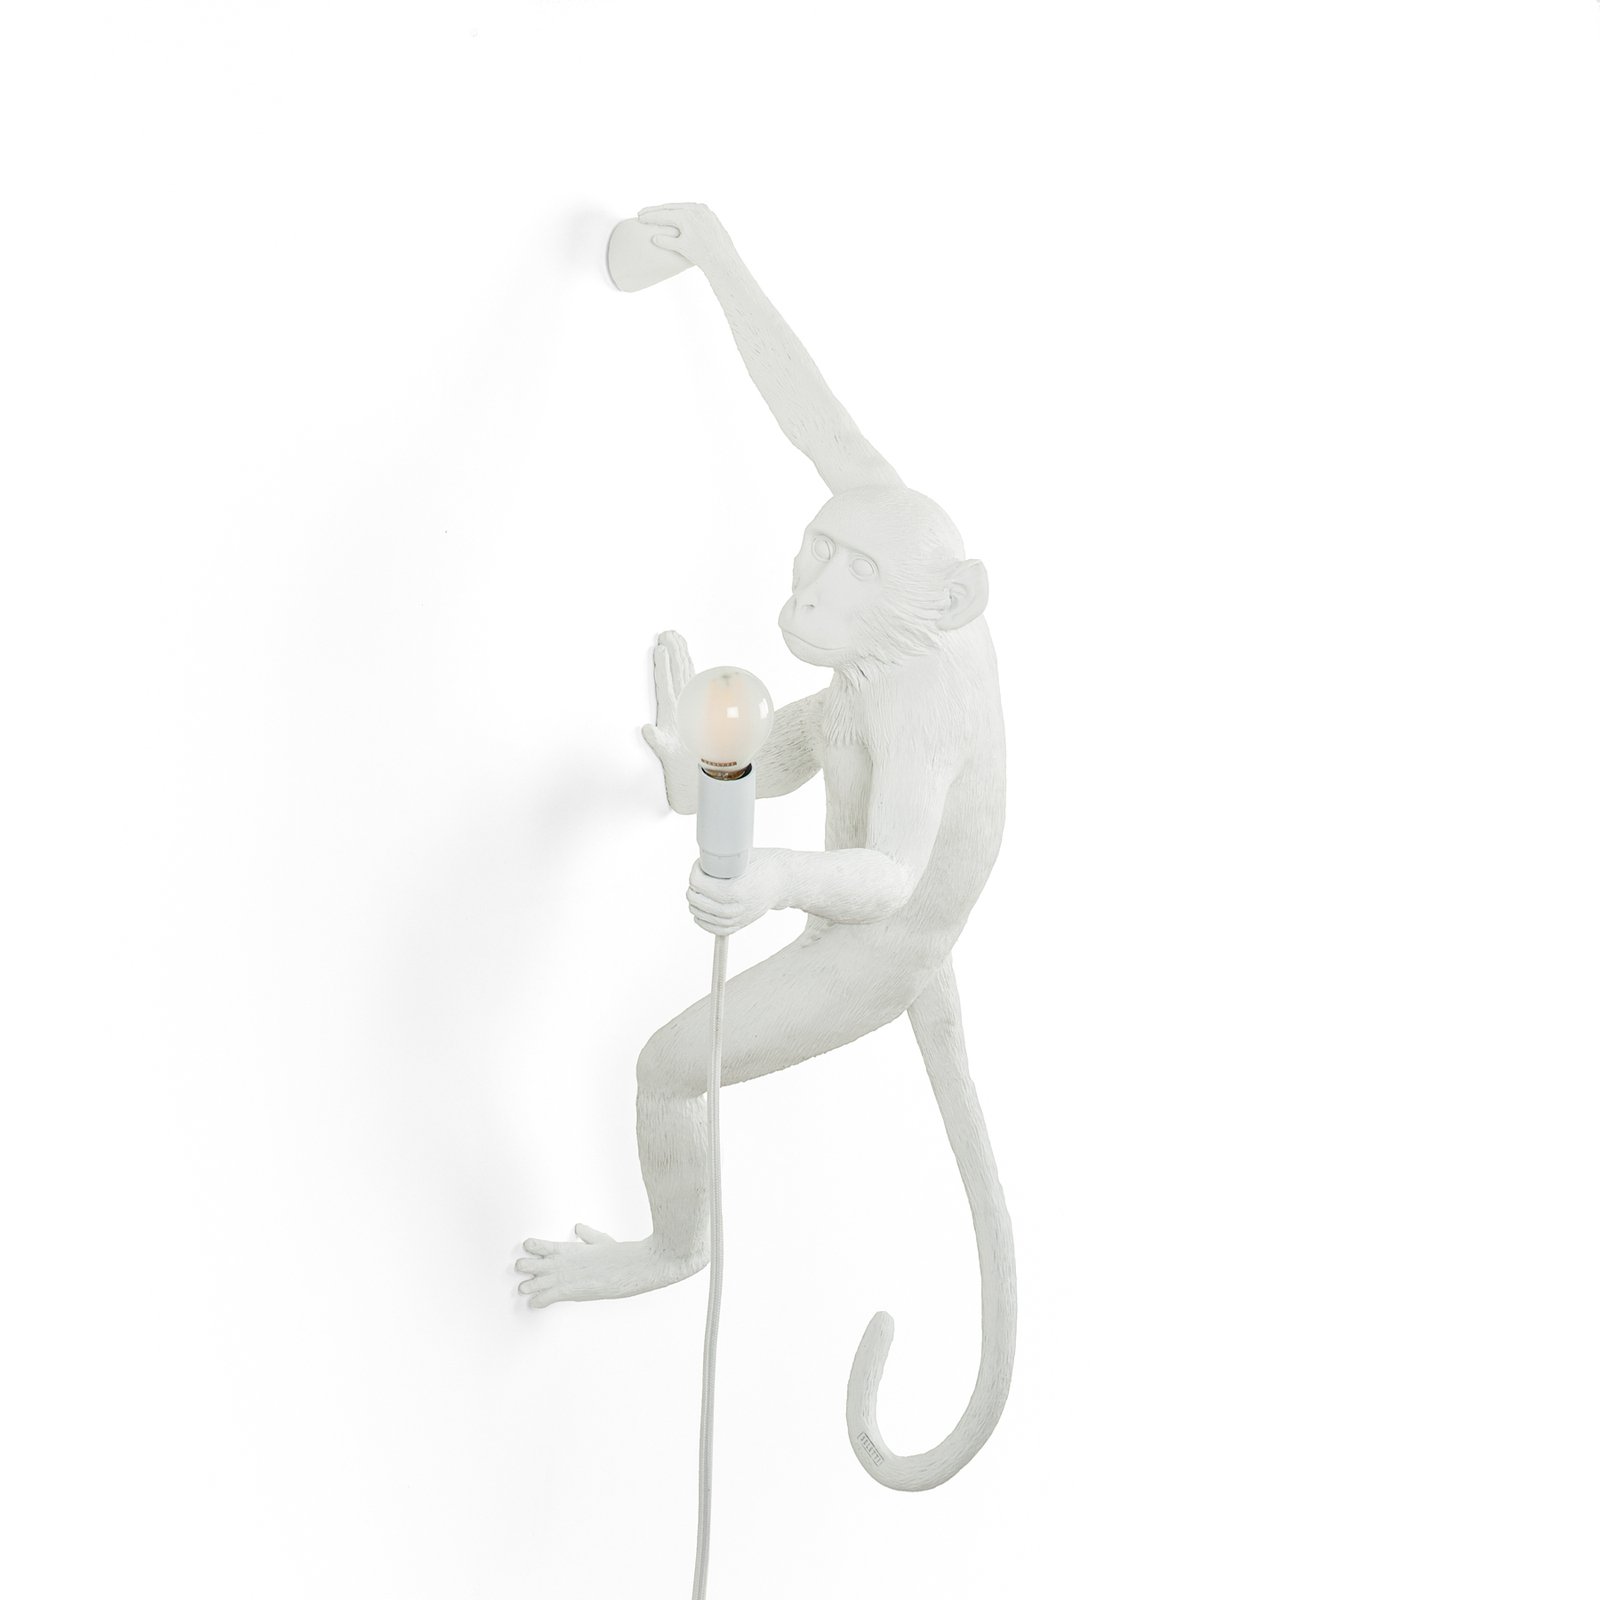 LED decoratie-wandlamp Monkey Lamp, wit, rechts